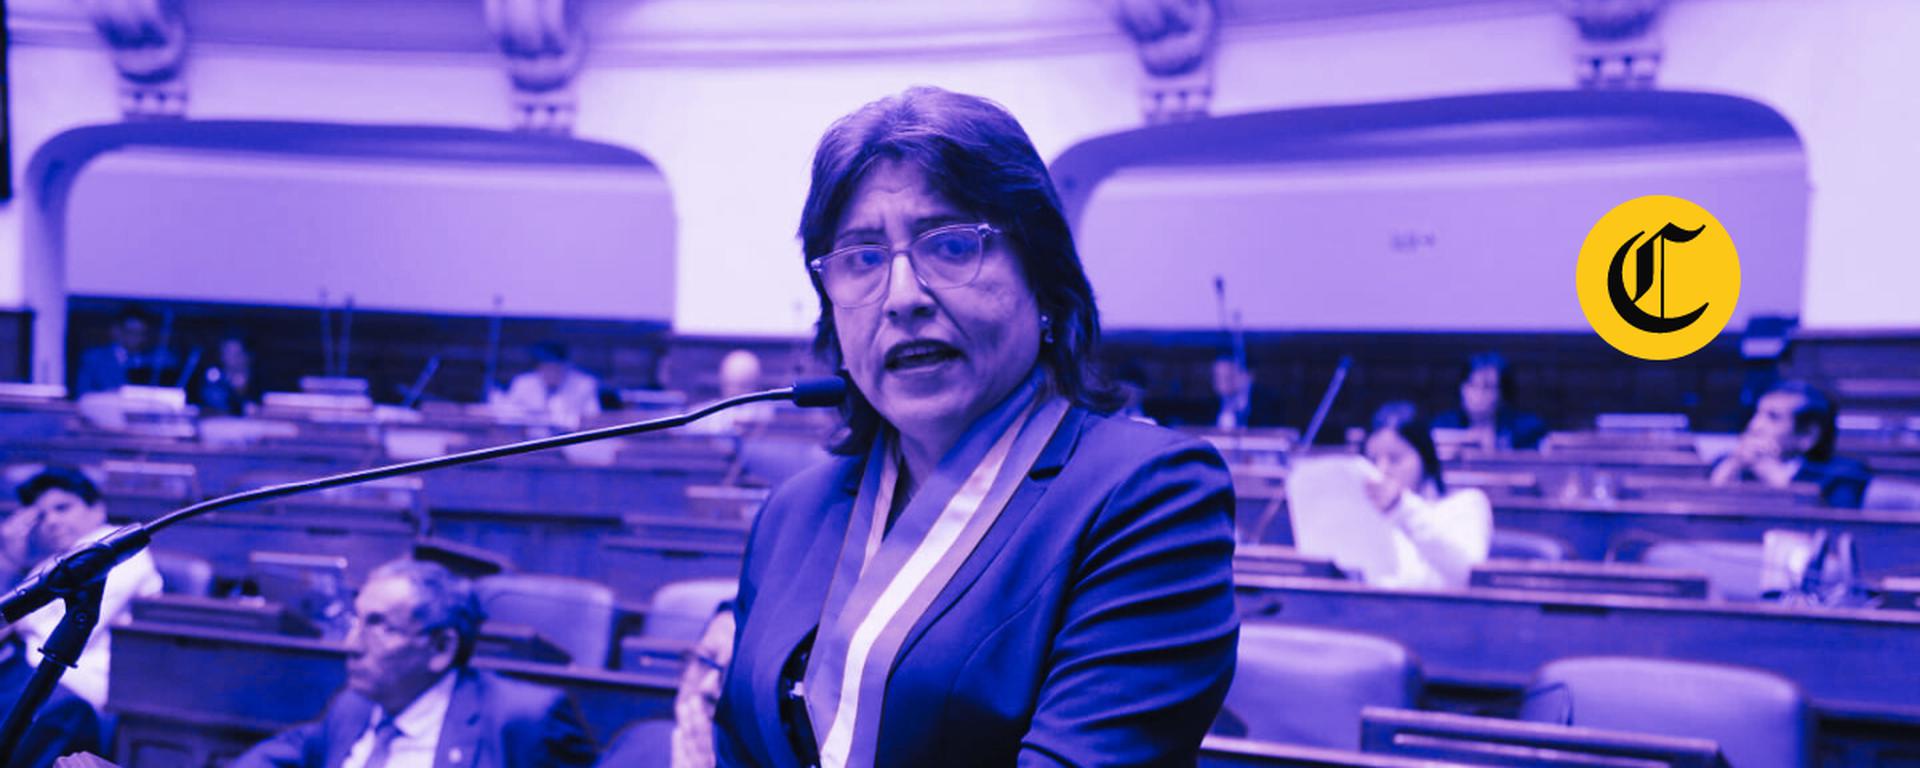 Cinco congresistas investigados piden inhabilitar a fiscal Delia Espinoza: ¿Cuáles son los argumentos de la denuncia?